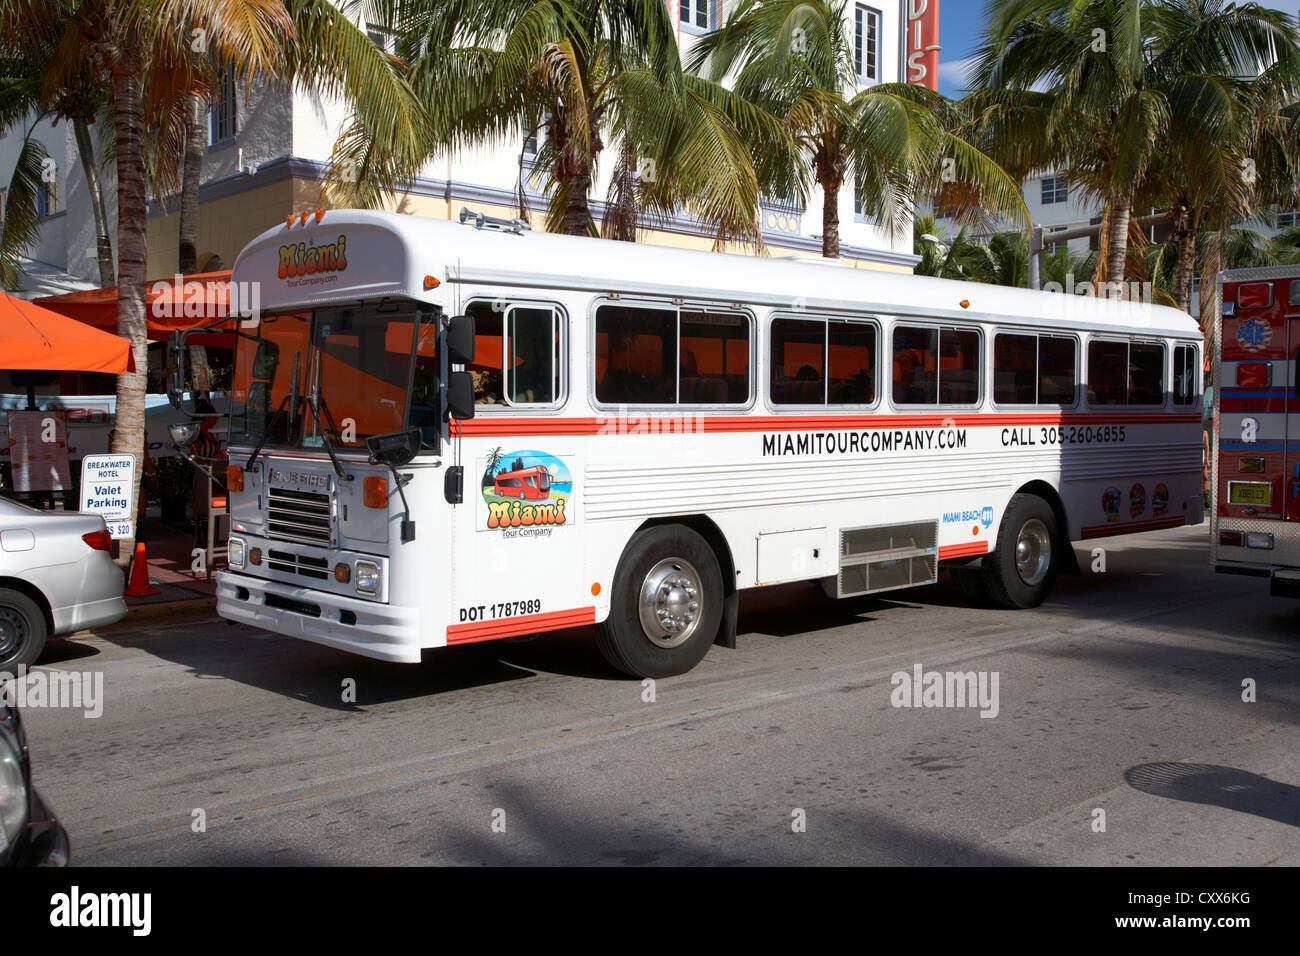 miami tour company tourist bus tours south beach florida usa Stock Photo